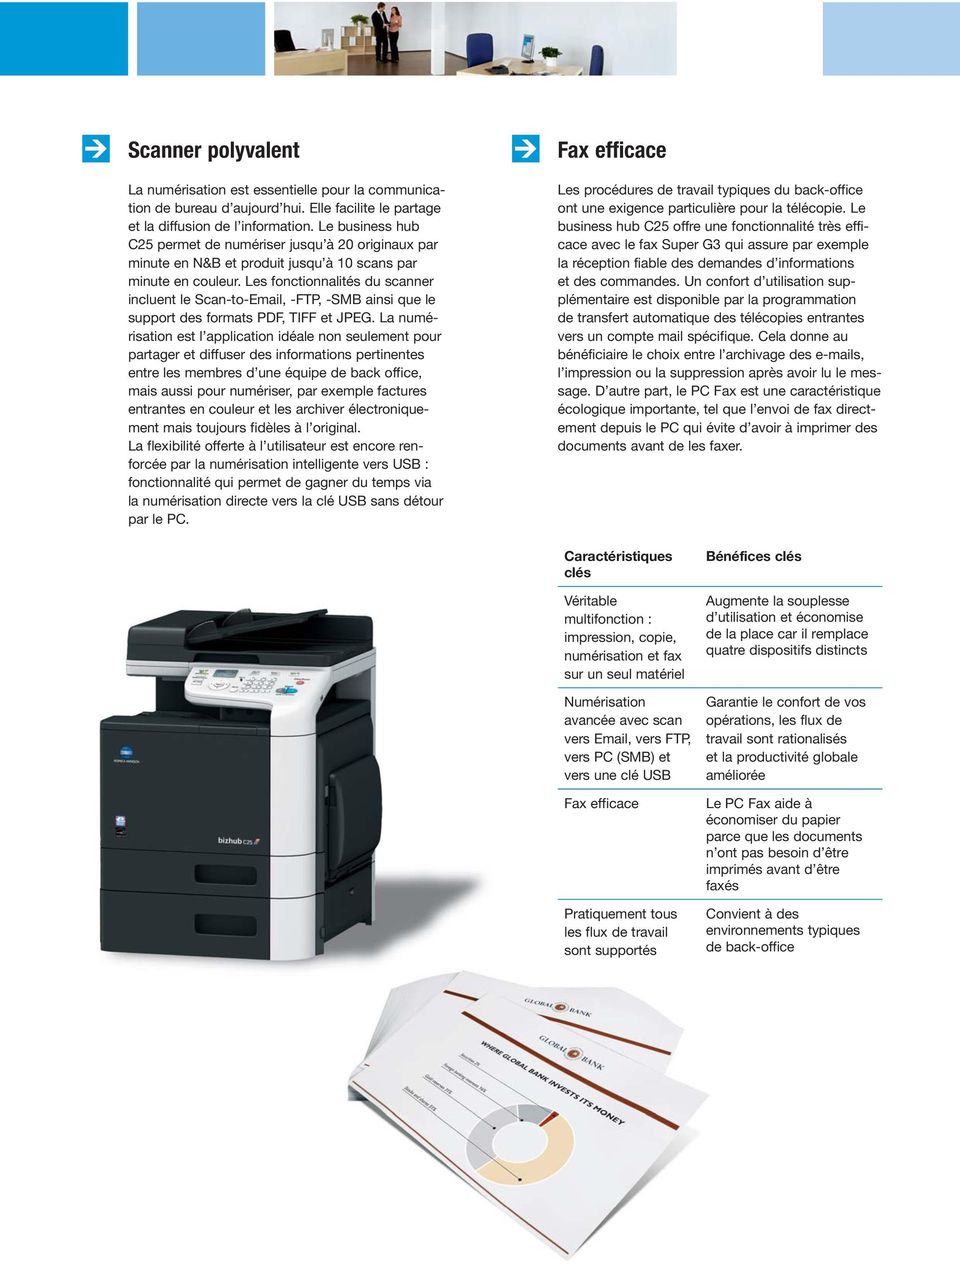 Les fonctionnalités du scanner incluent le Scan-to-Email, -FTP, -SMB ainsi que le support des formats PDF, TIFF et JPEG.